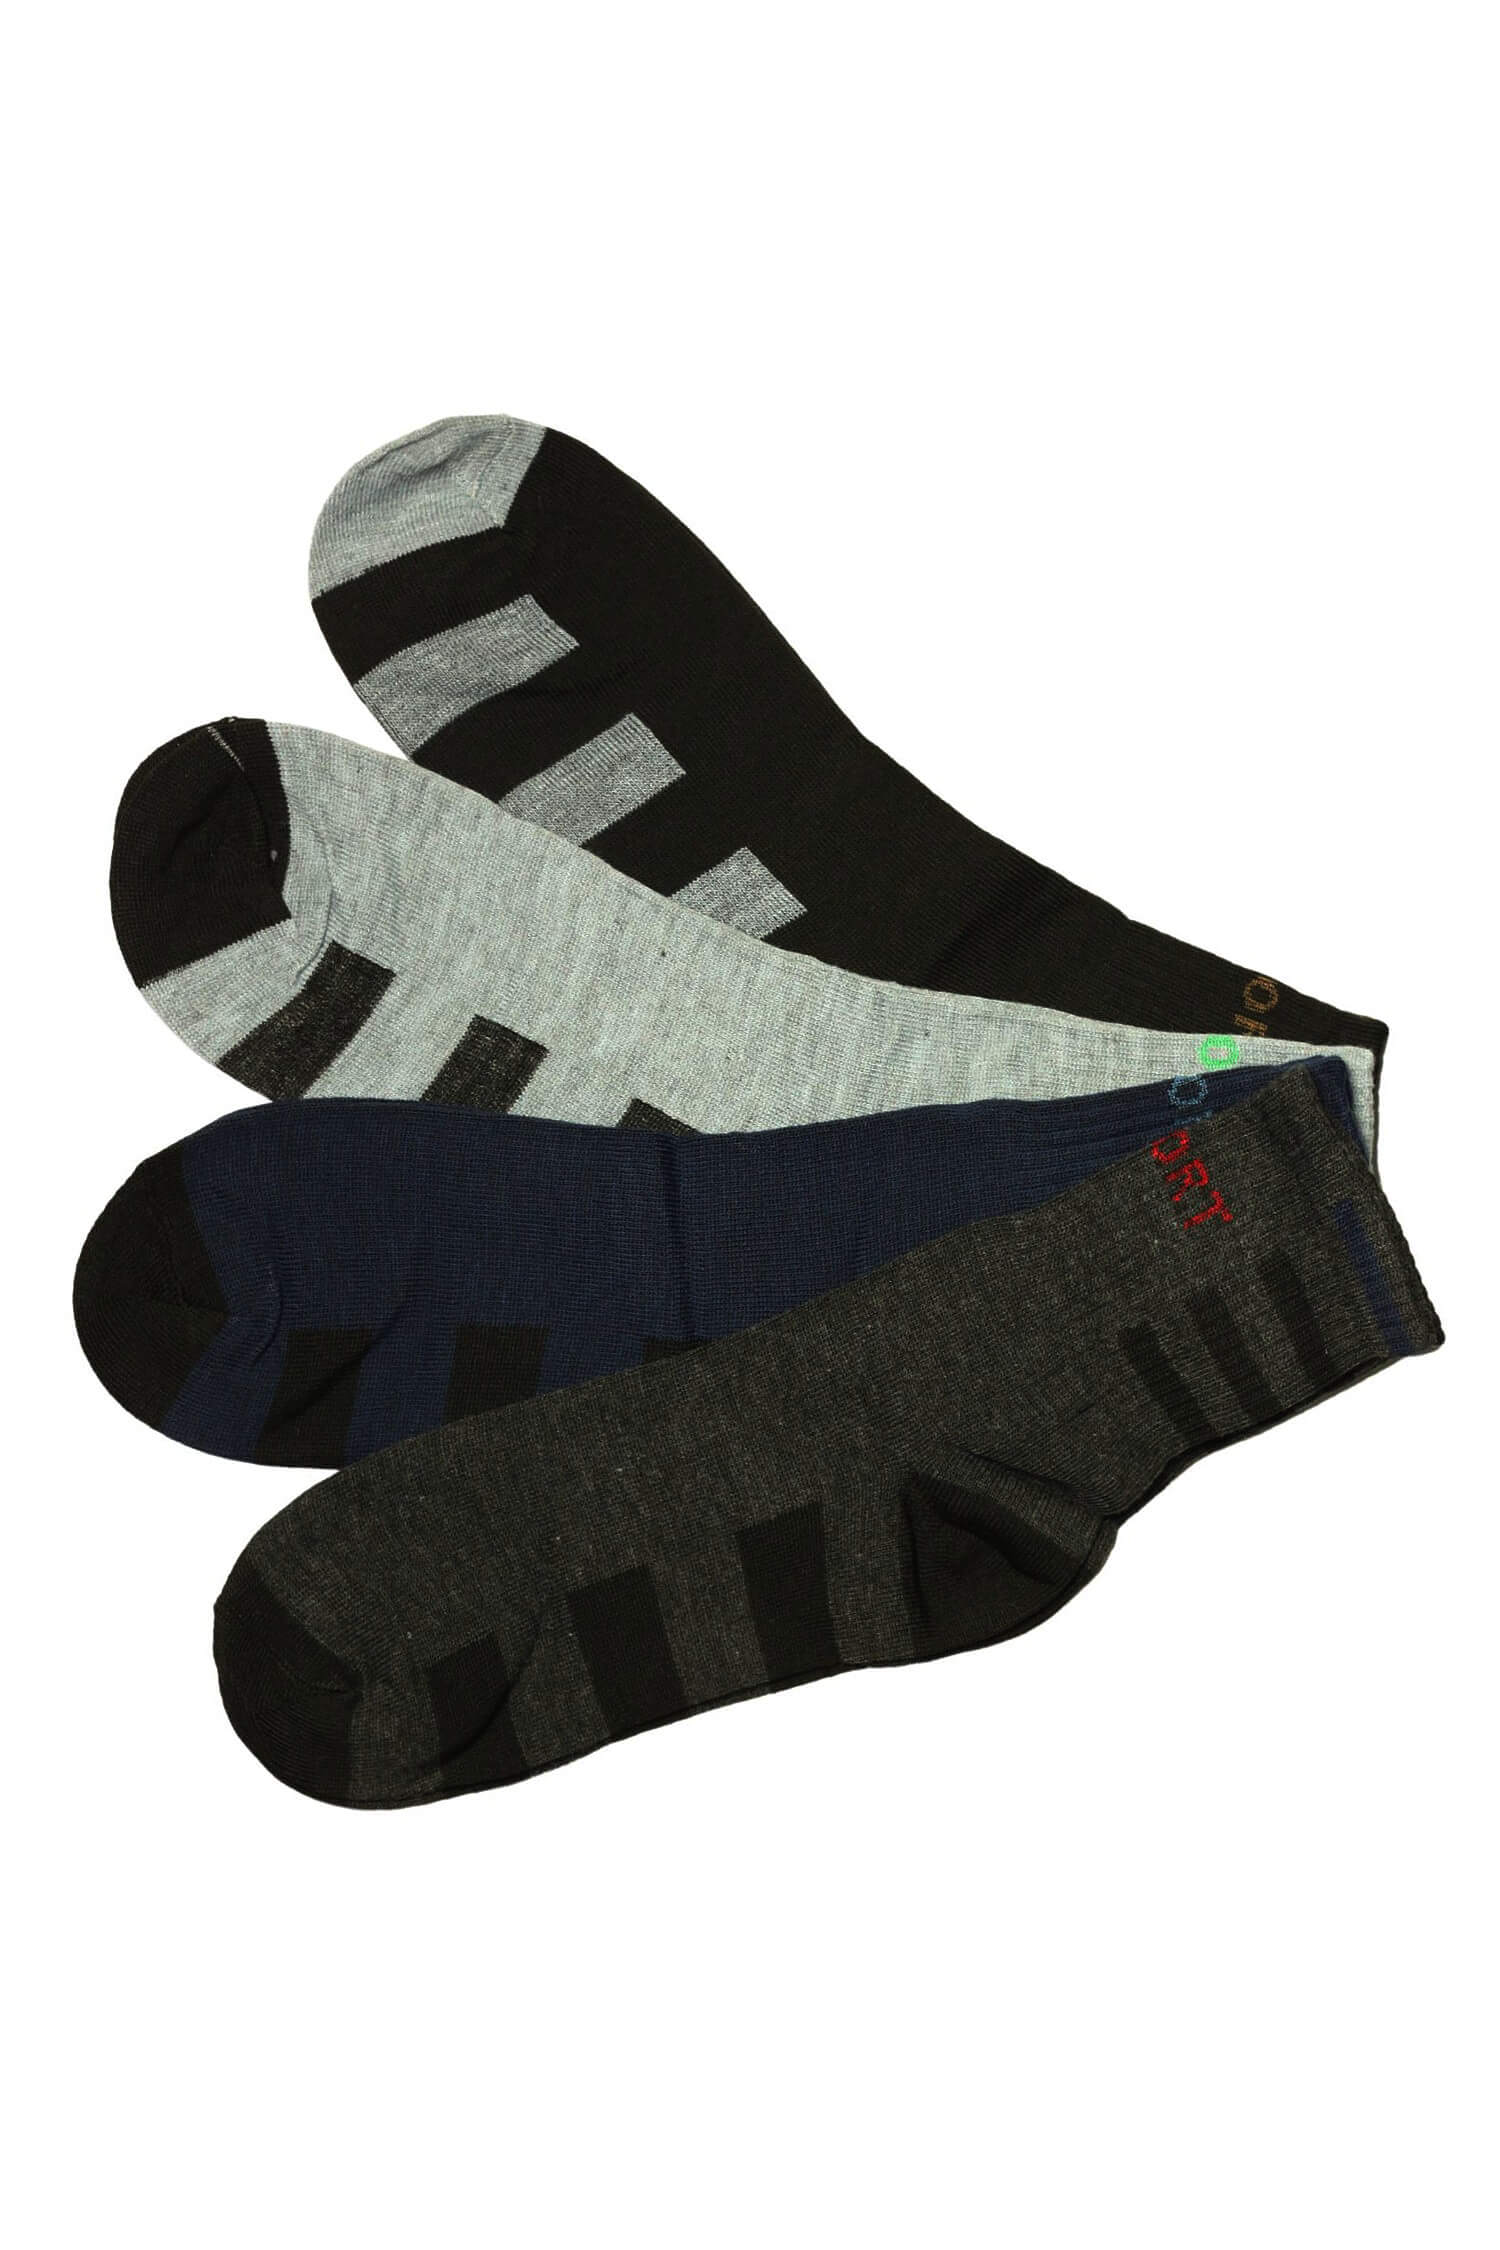 Pánské ponožky bavlna ZM-381 - 3 páry 40-43 vícebarevná